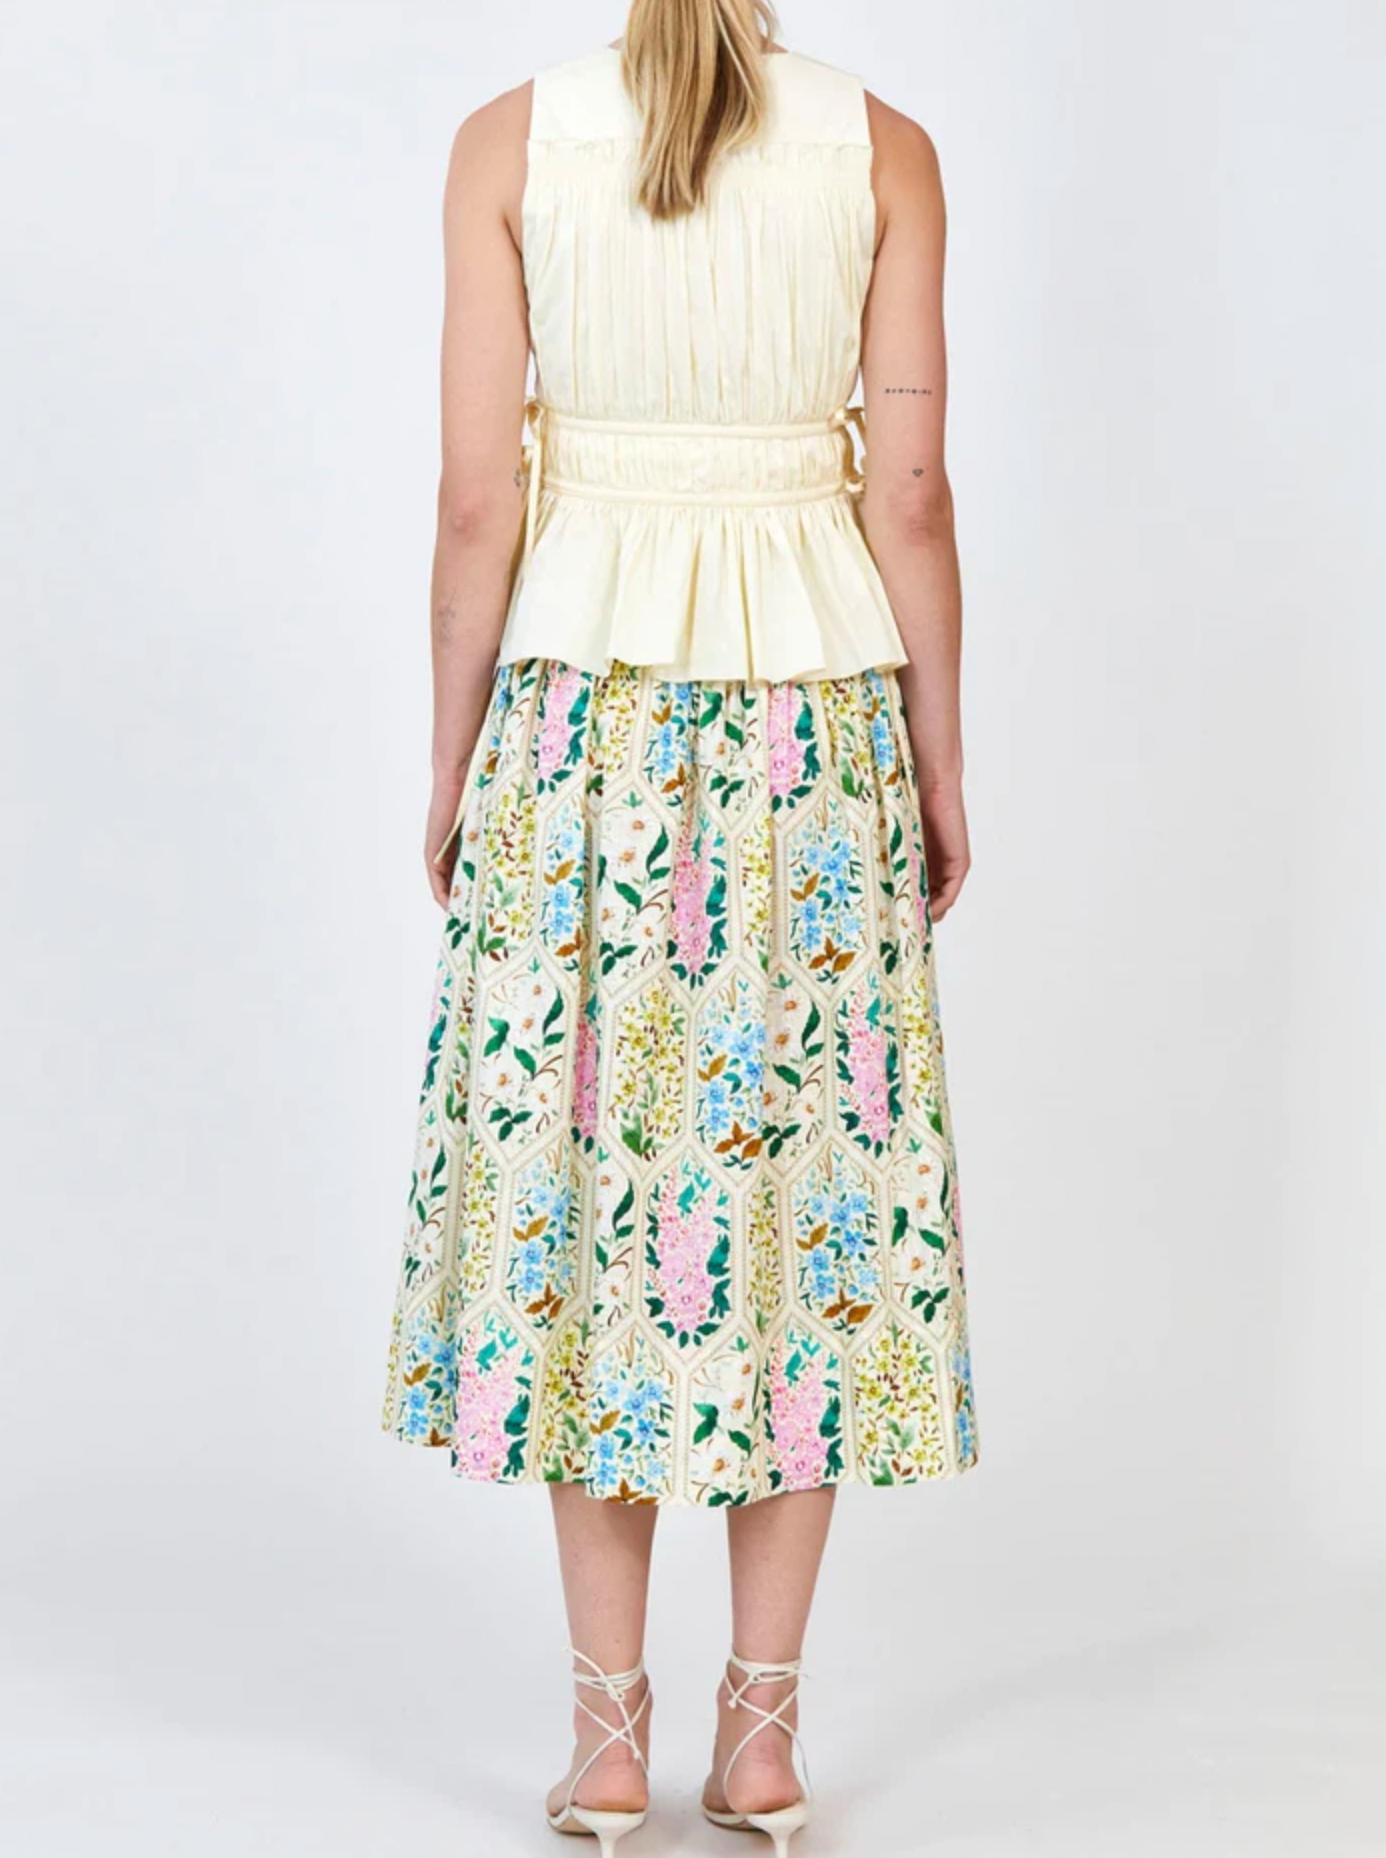 Fallon Skirt - Floral Tile